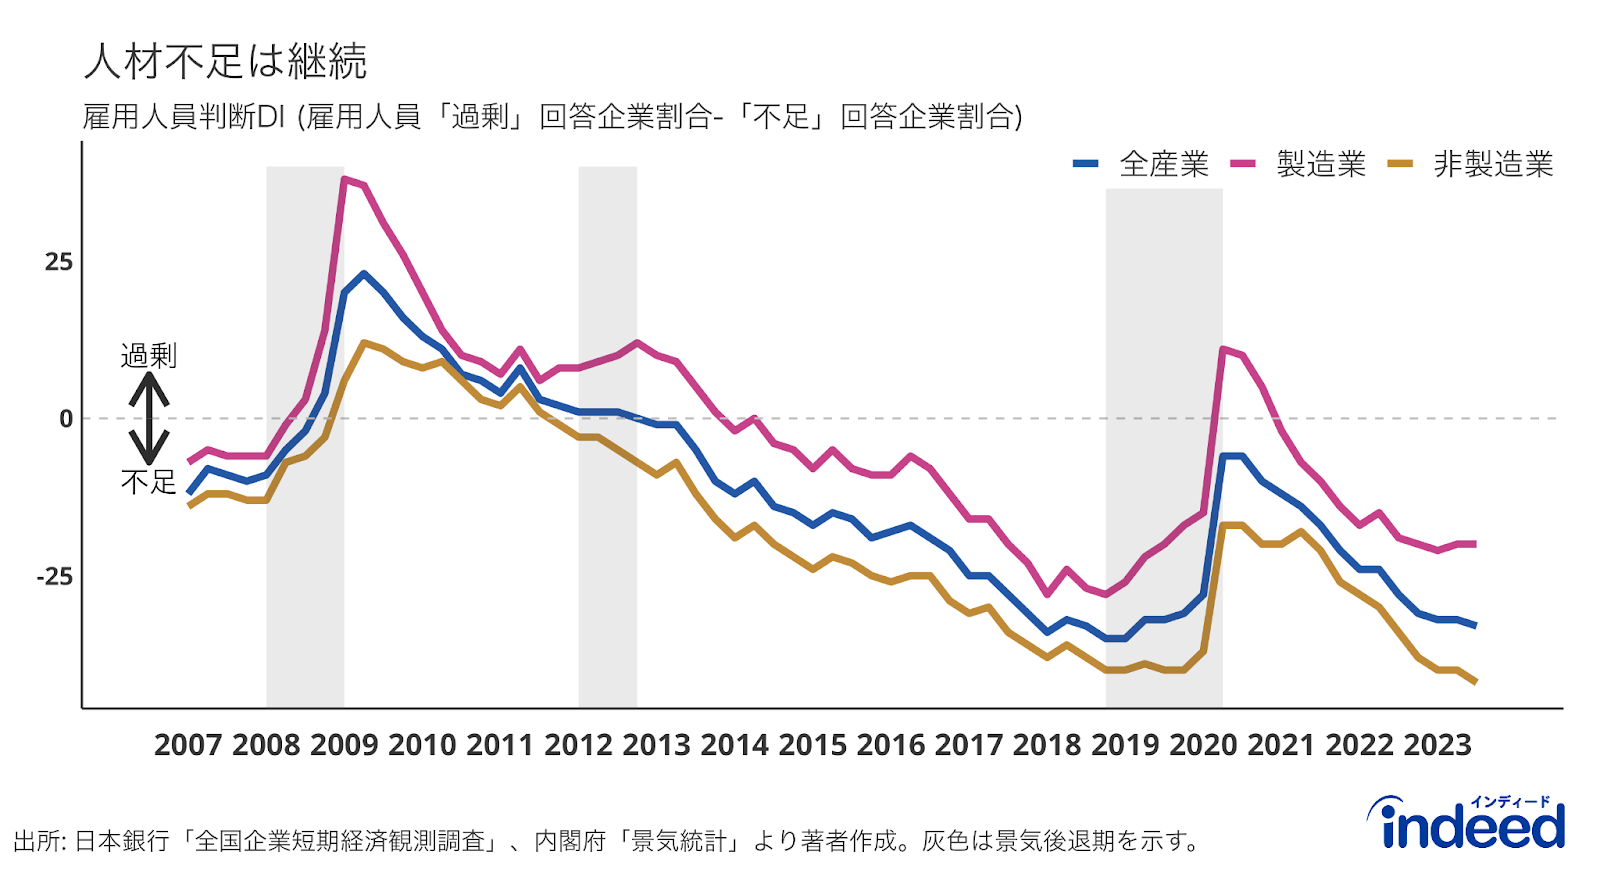 日本銀行の短観より、企業の従業員に対する過不足感の回答（期間：2008Q1-2022Q3）を示したもの。値がプラスの場合は人員過剰気味、マイナスの場合は人員不足気味であることを表す。青色、赤色、黄色の線はそれぞれ、全産業、製造業、非製造業の回答を表す。灰色領域は景気後退期を表す